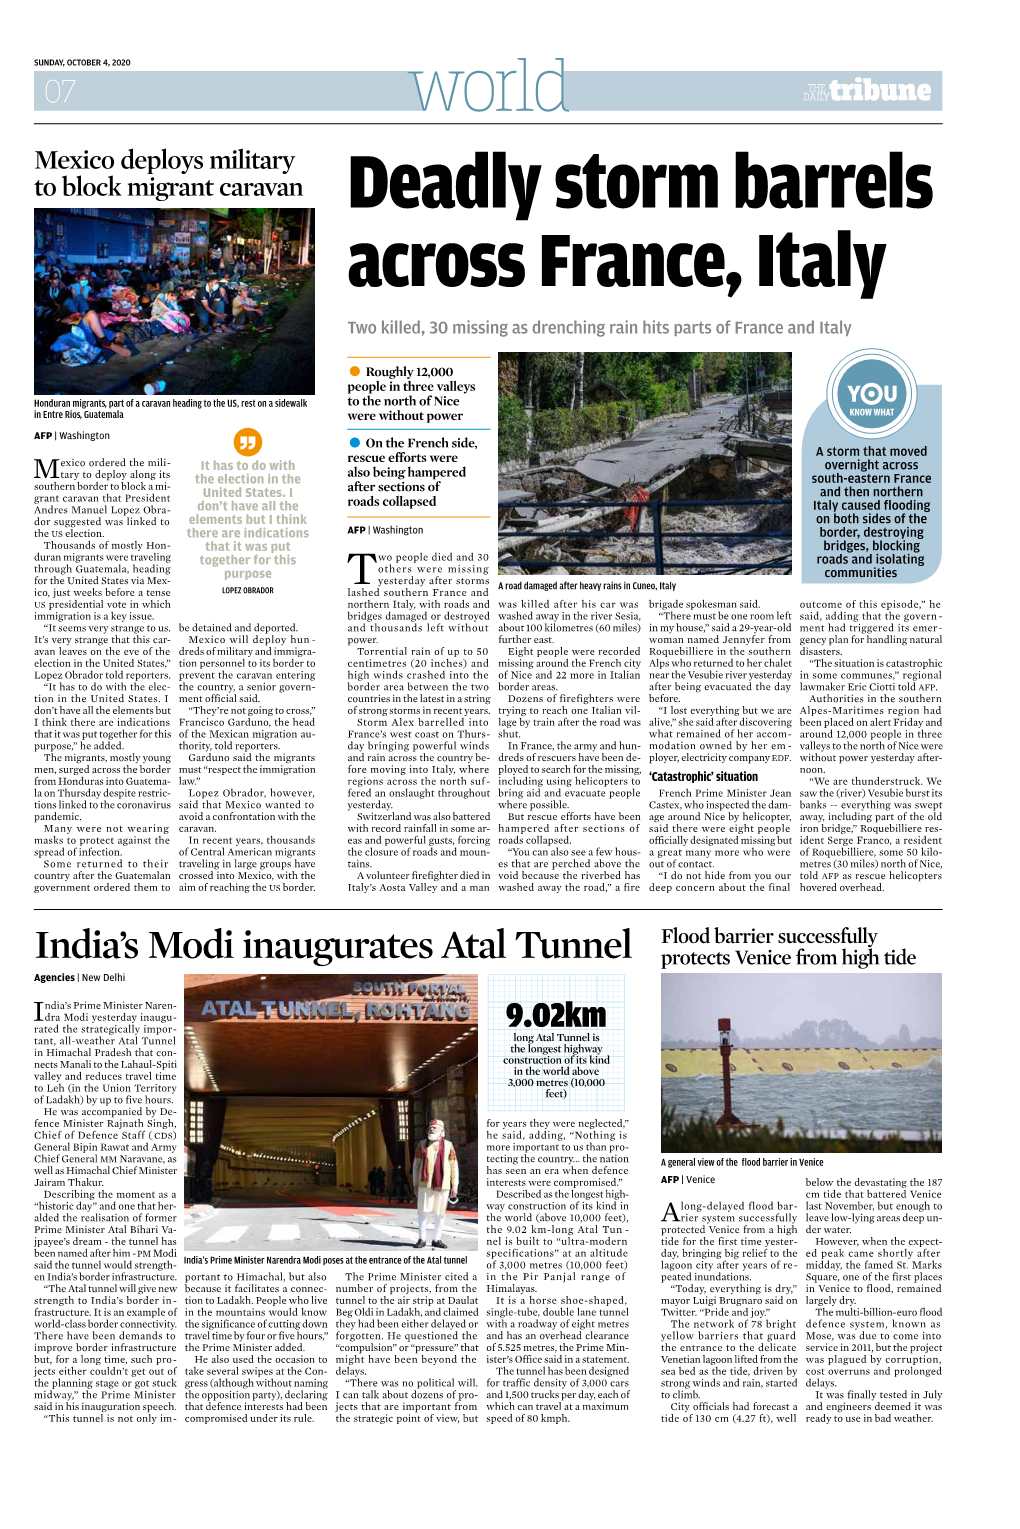 India's Modi Inaugurates Atal Tunnel